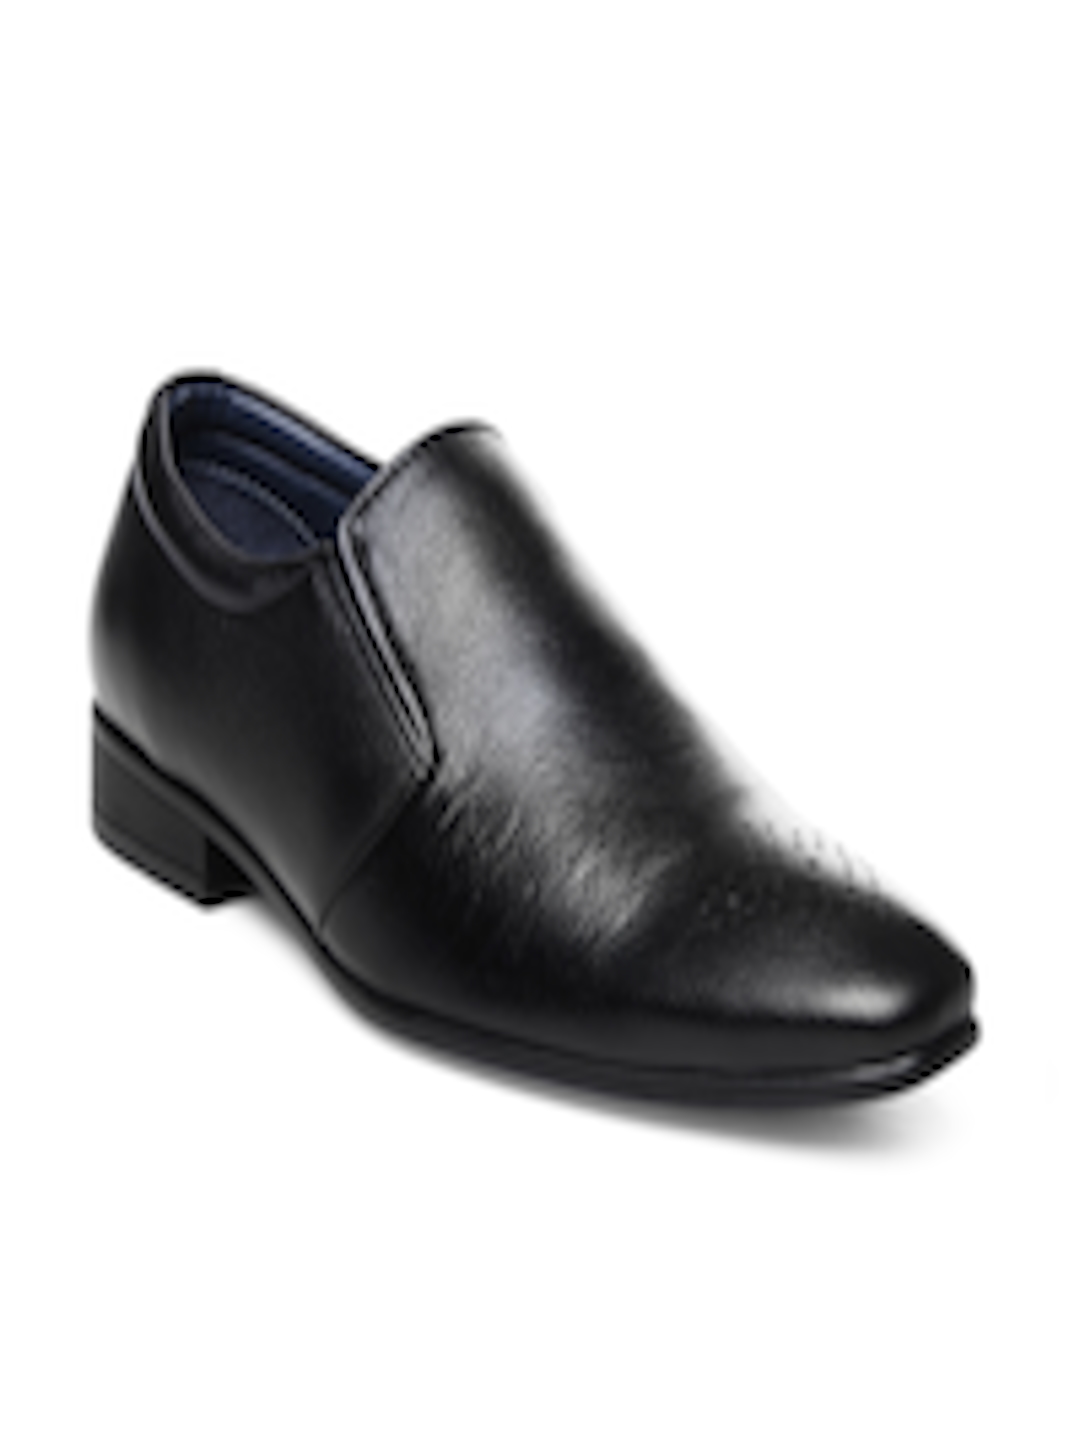 Buy Mancini Men Black Leather Semiformal Shoes - Formal Shoes for Men ...